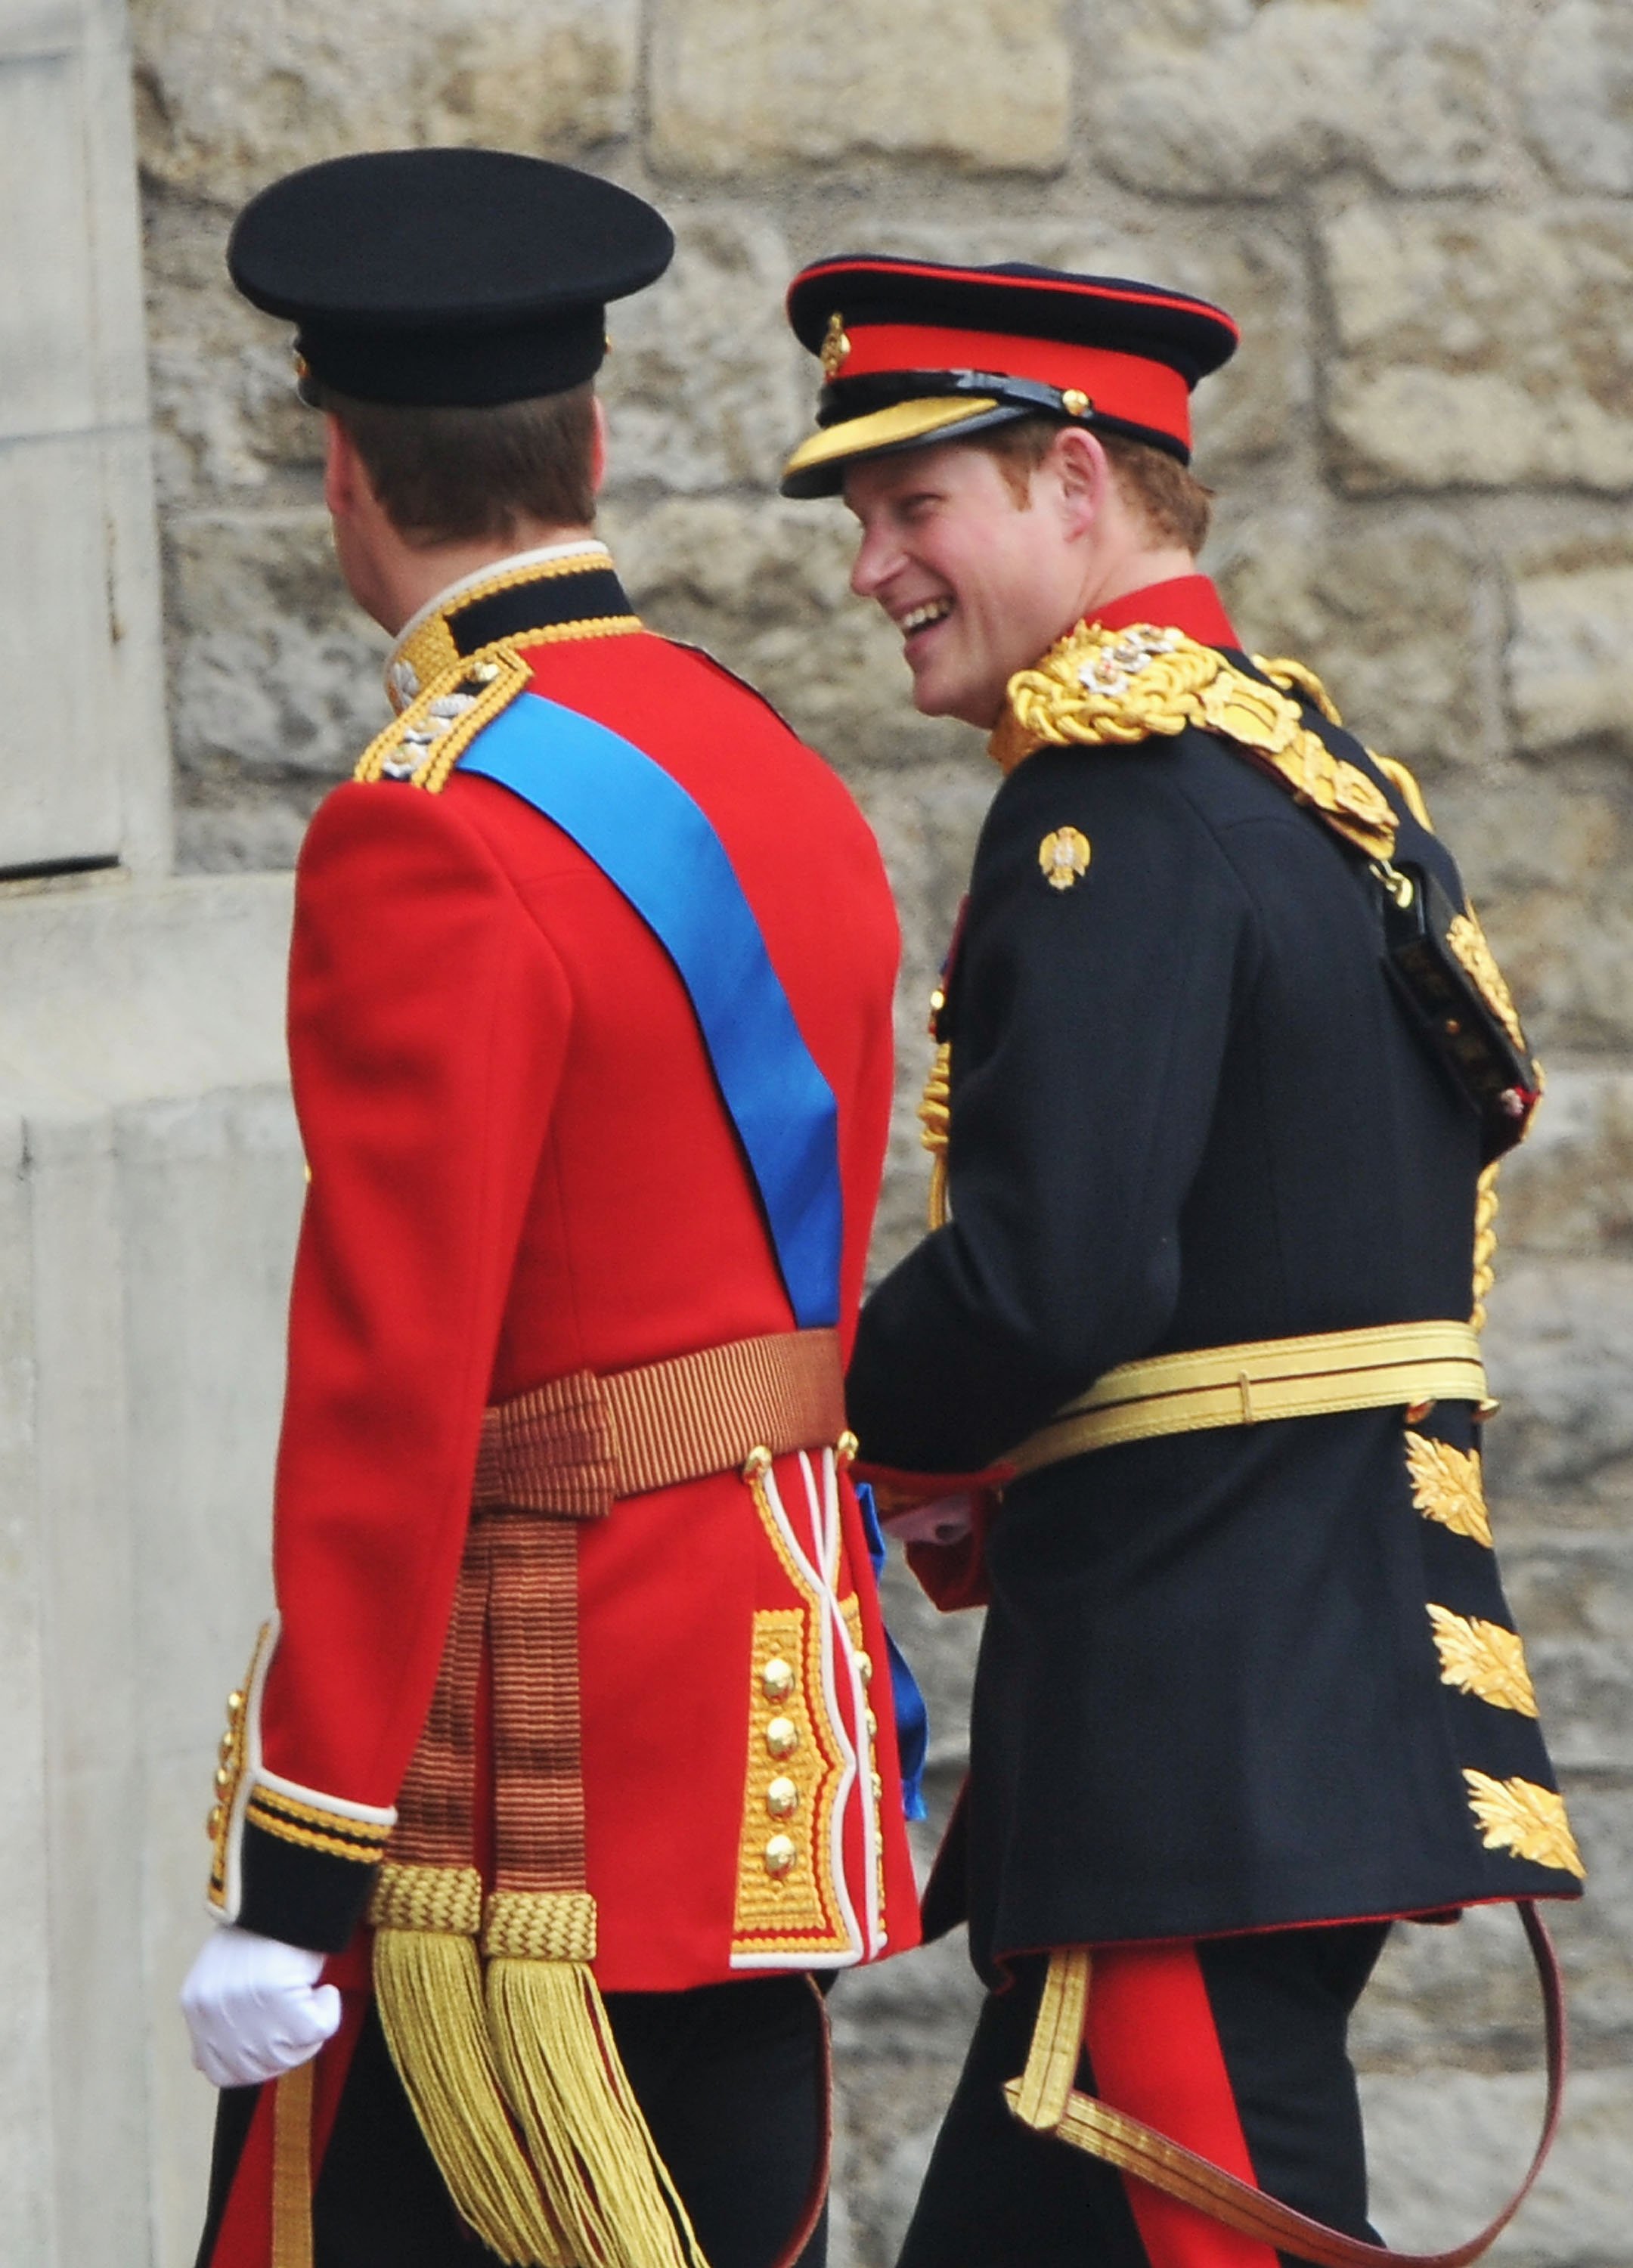 威廉王子和哈里王子抵達威斯敏斯特教堂參加威廉與凱特米德爾頓的婚禮時分享了一個笑話